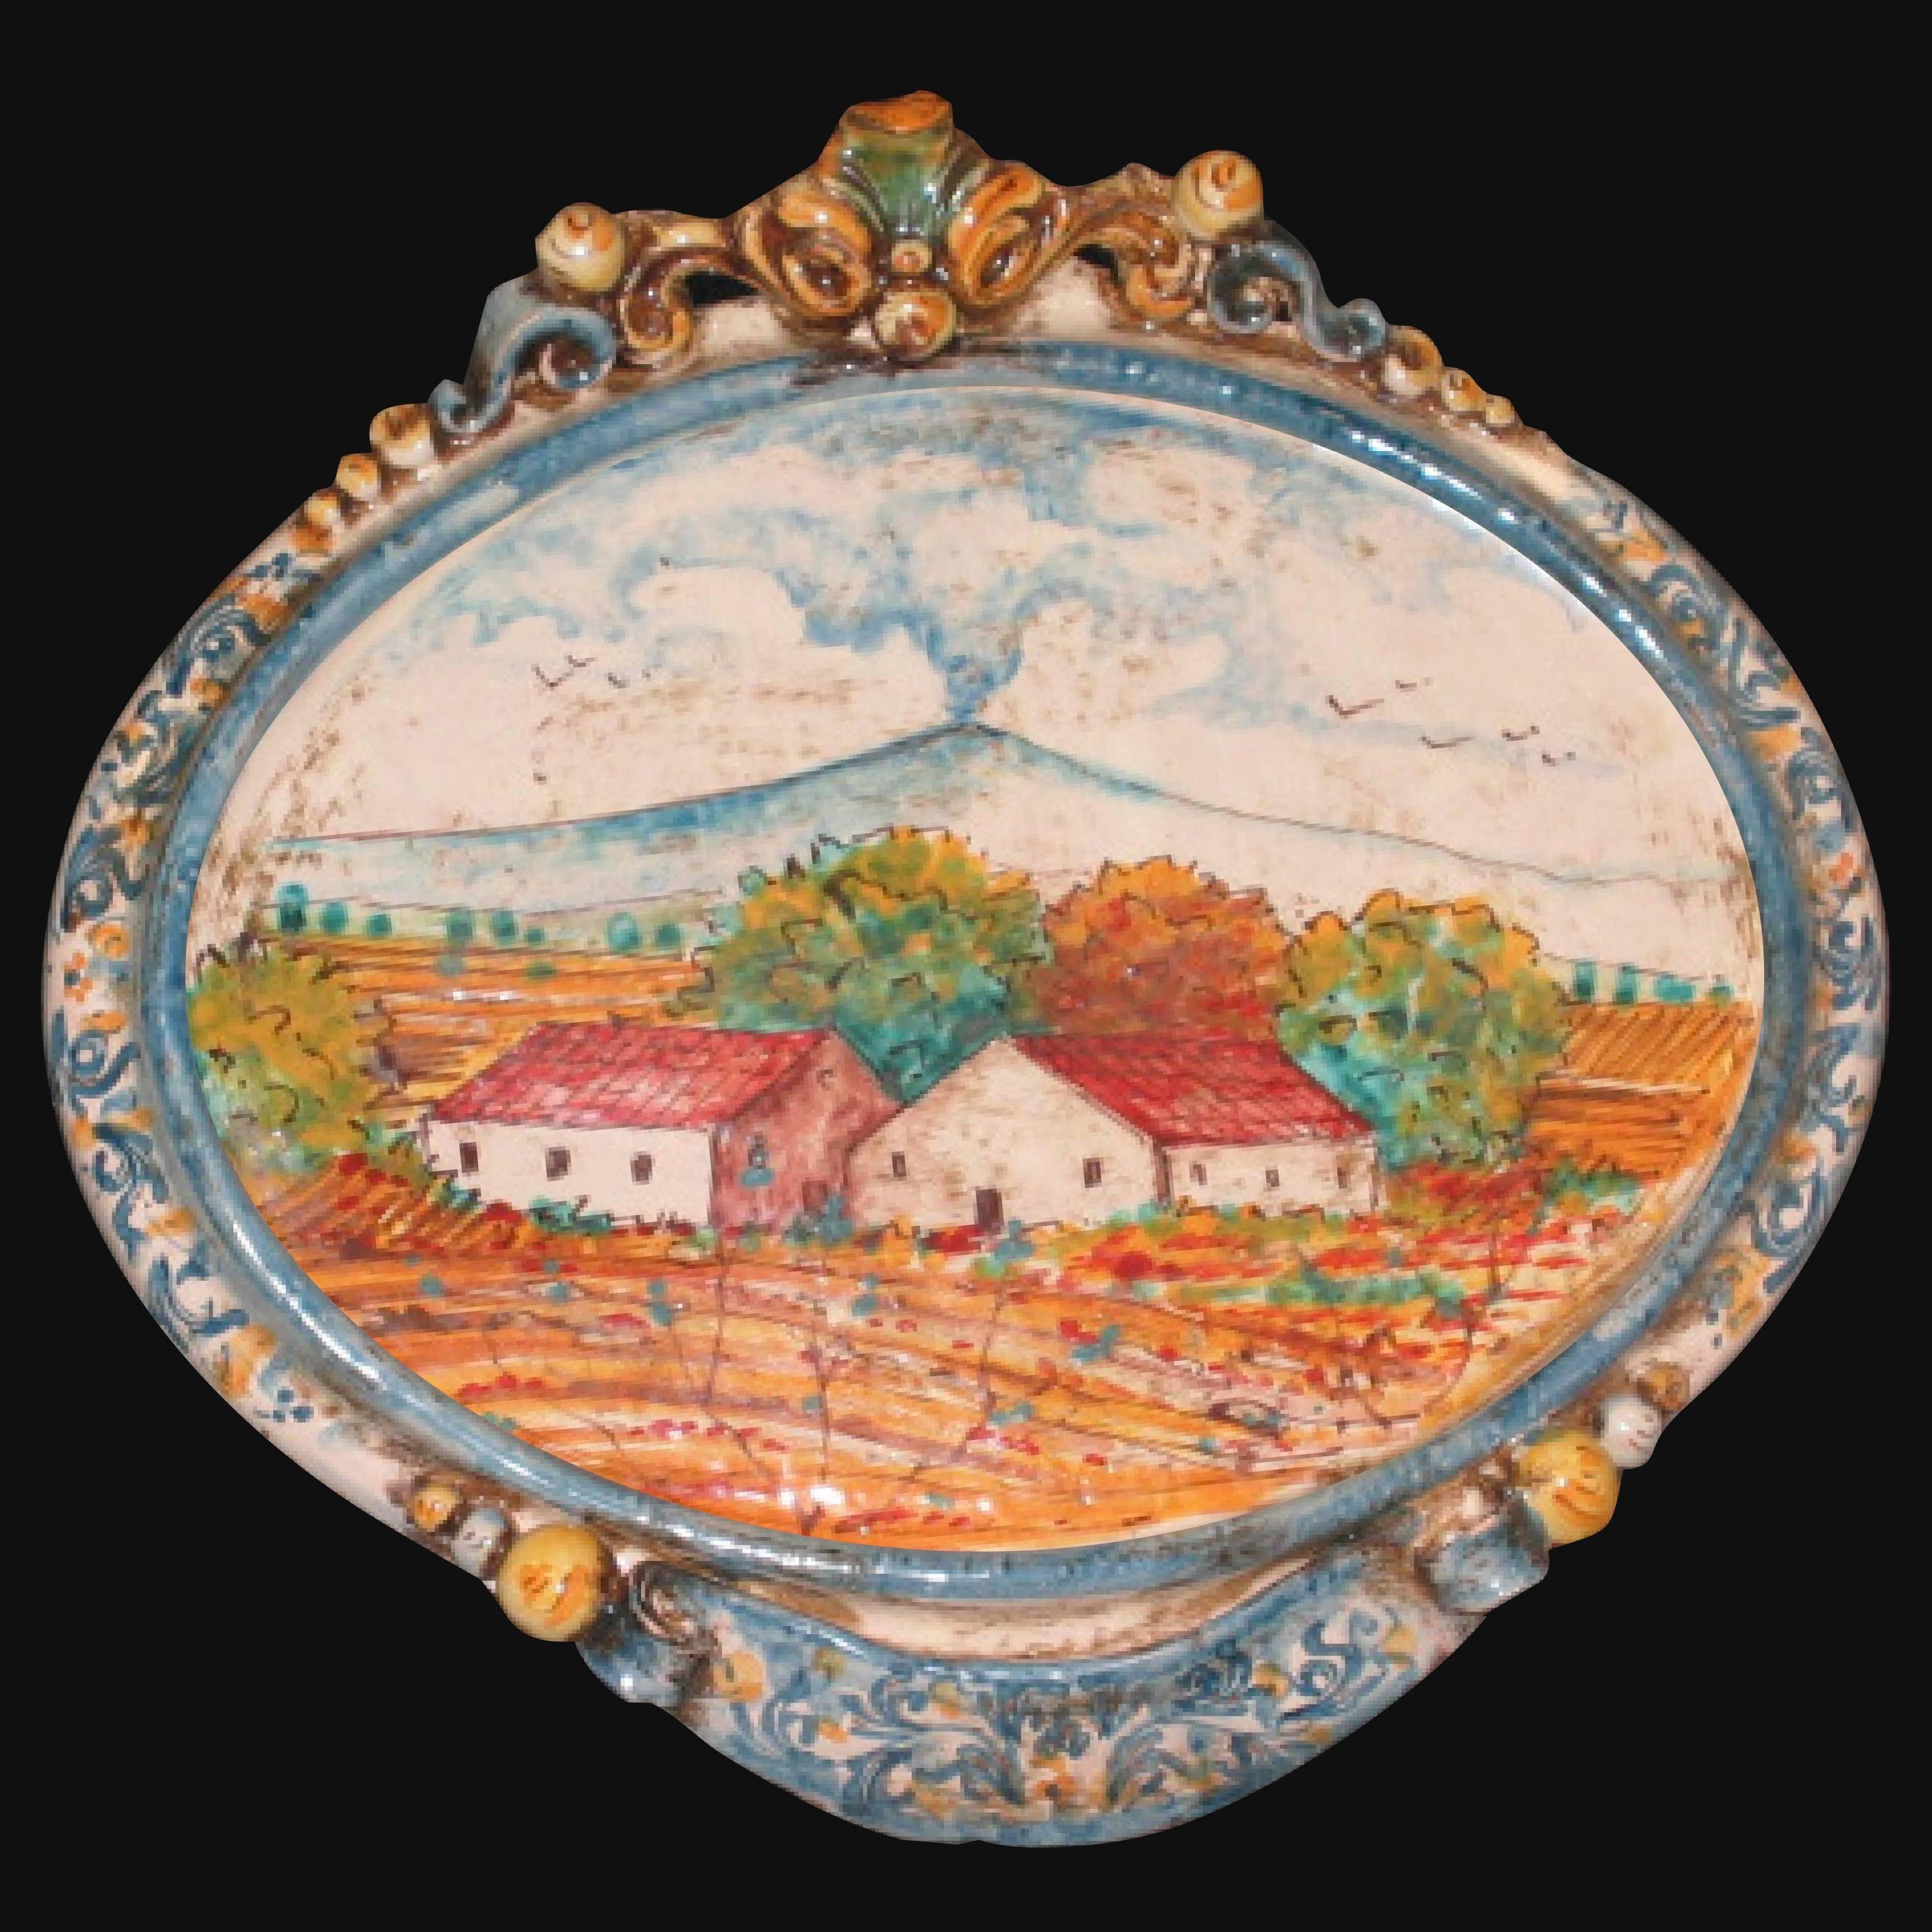 Ovale orizzontale medio con paesaggio etna 23x25 blu e arancio in Ceramica Artistica di Caltagirone - Ceramiche di Caltagirone Sofia